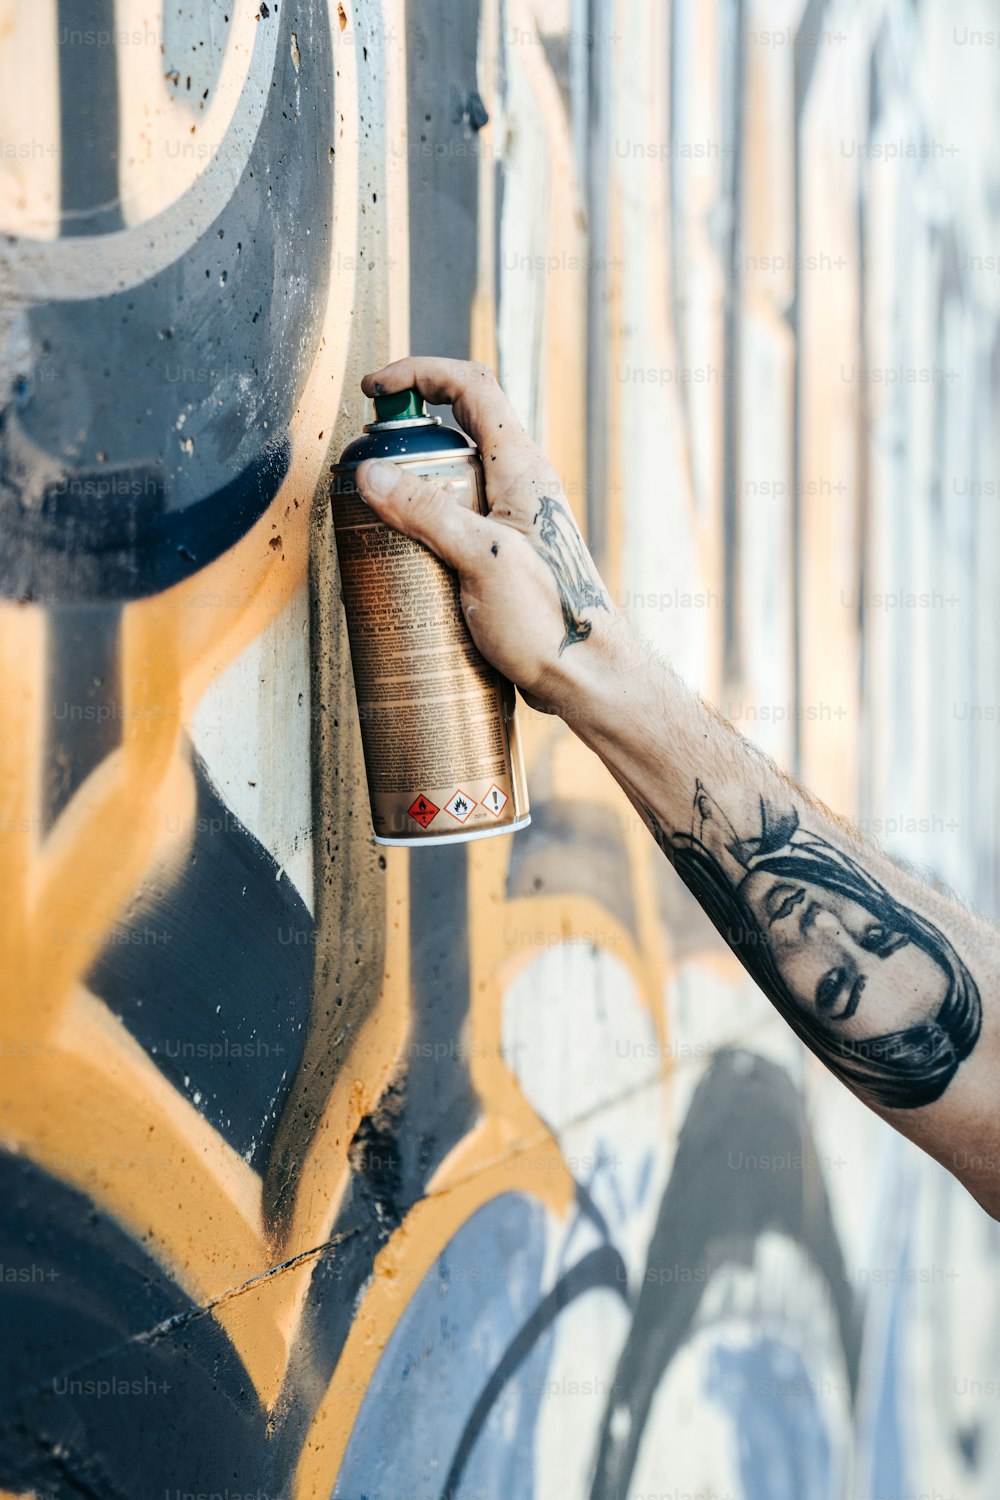 Un homme peint un mur avec des graffitis